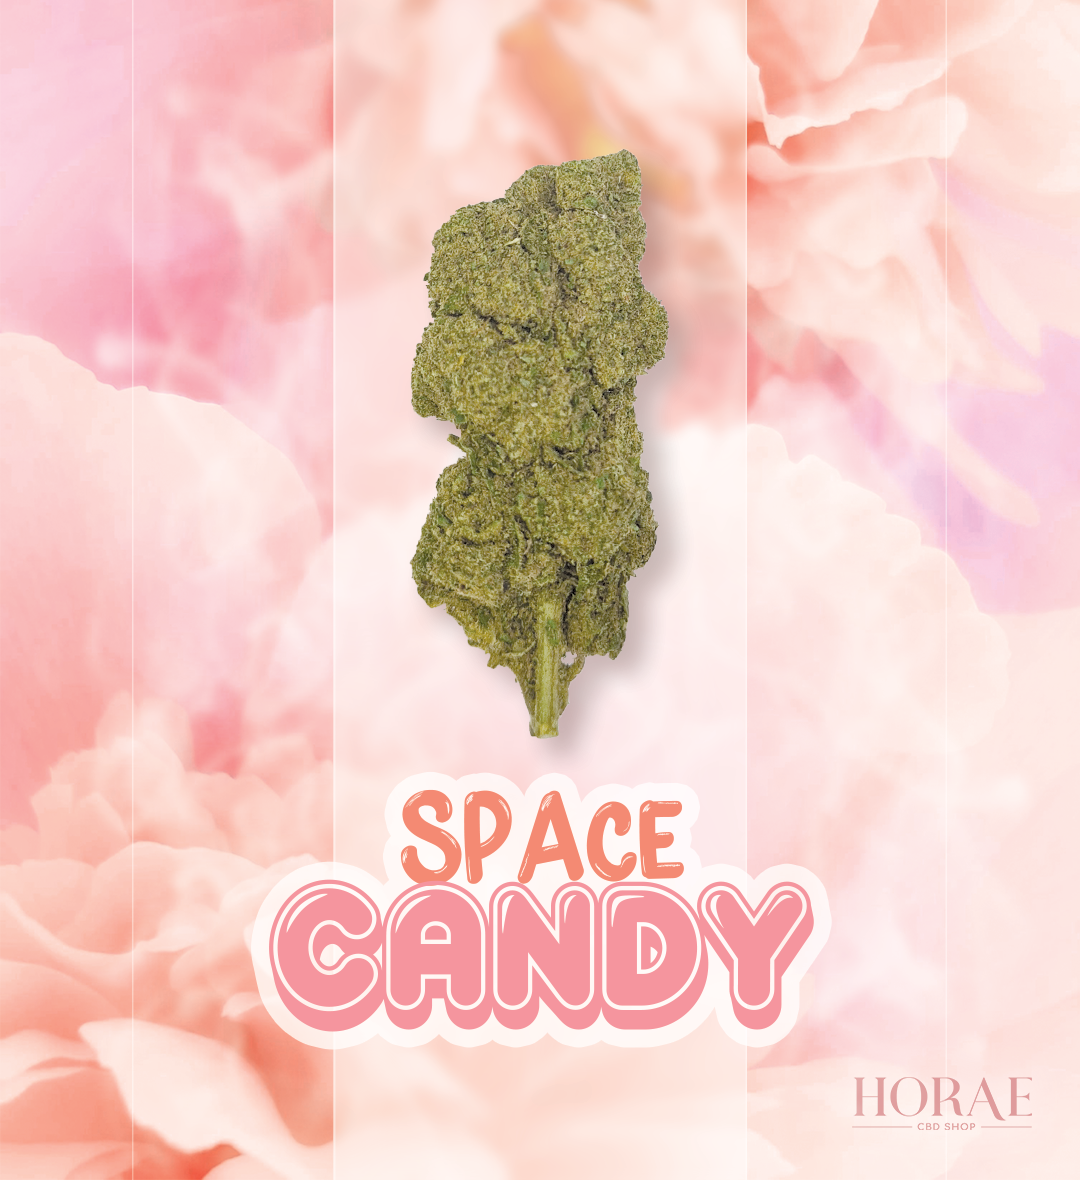 Space Candy CBD